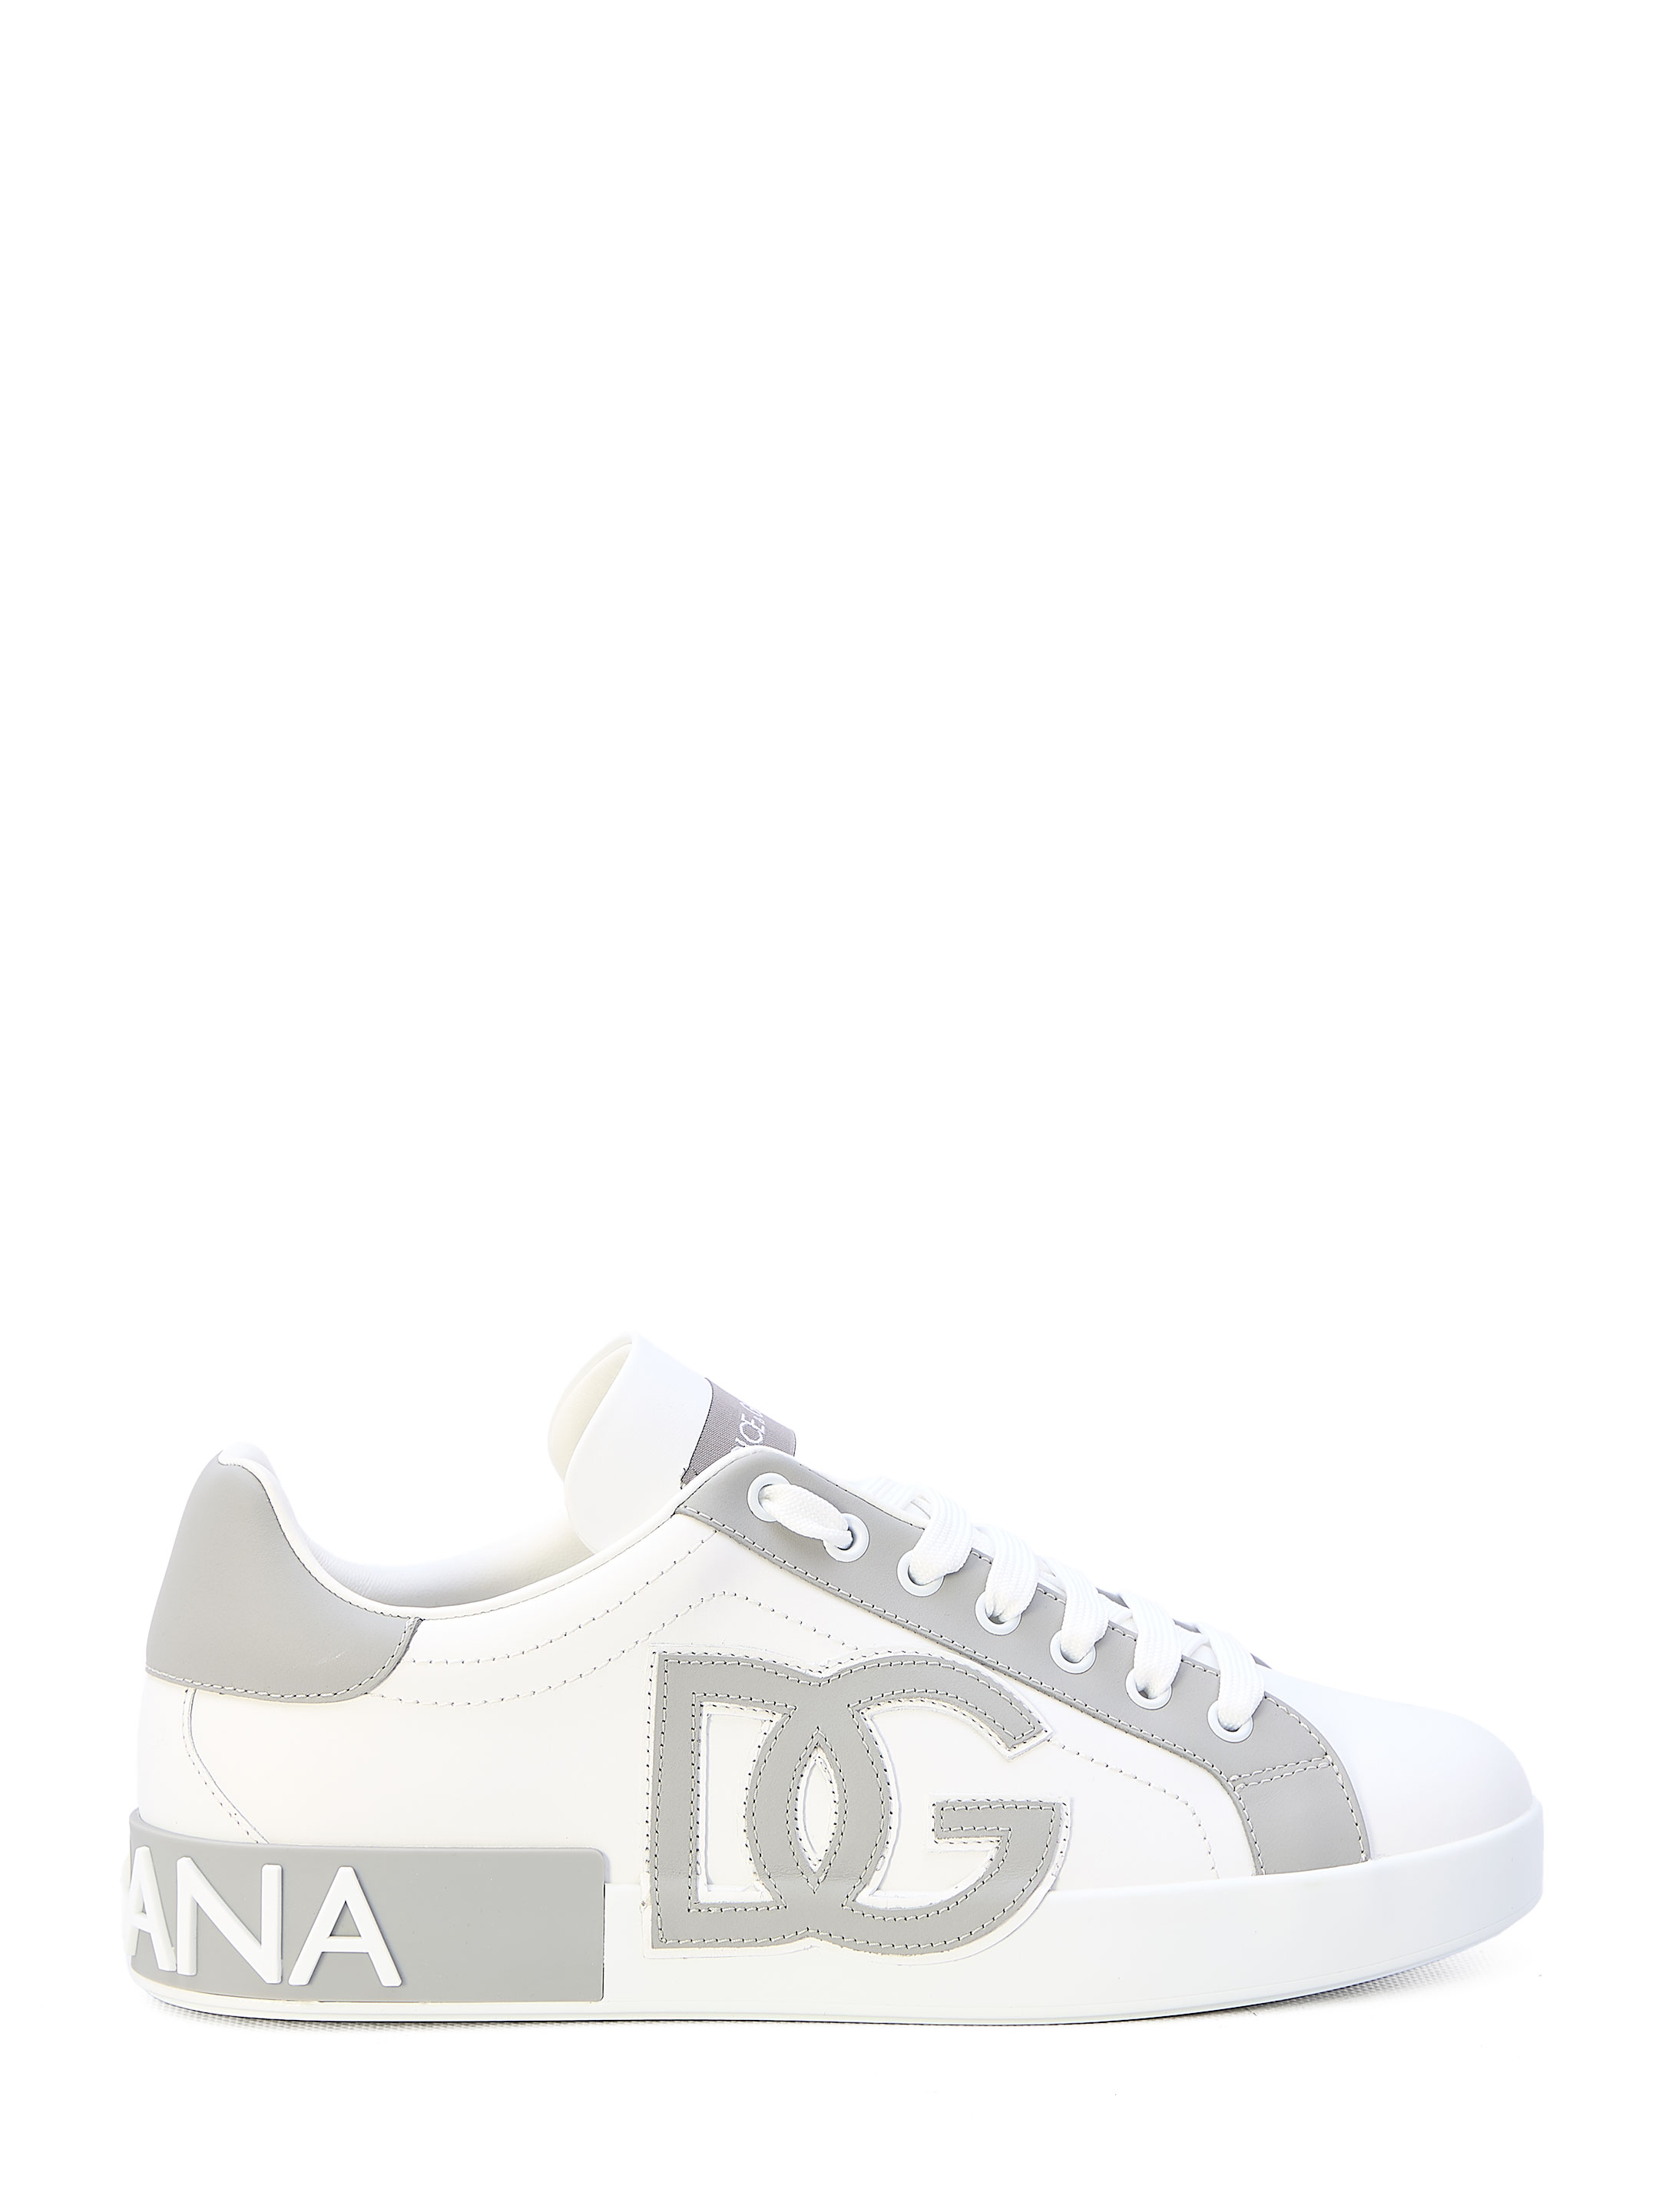 Кроссовки Dolce&Gabbana Portofino, белый белоснежные кроссовки overcome с серыми вставками